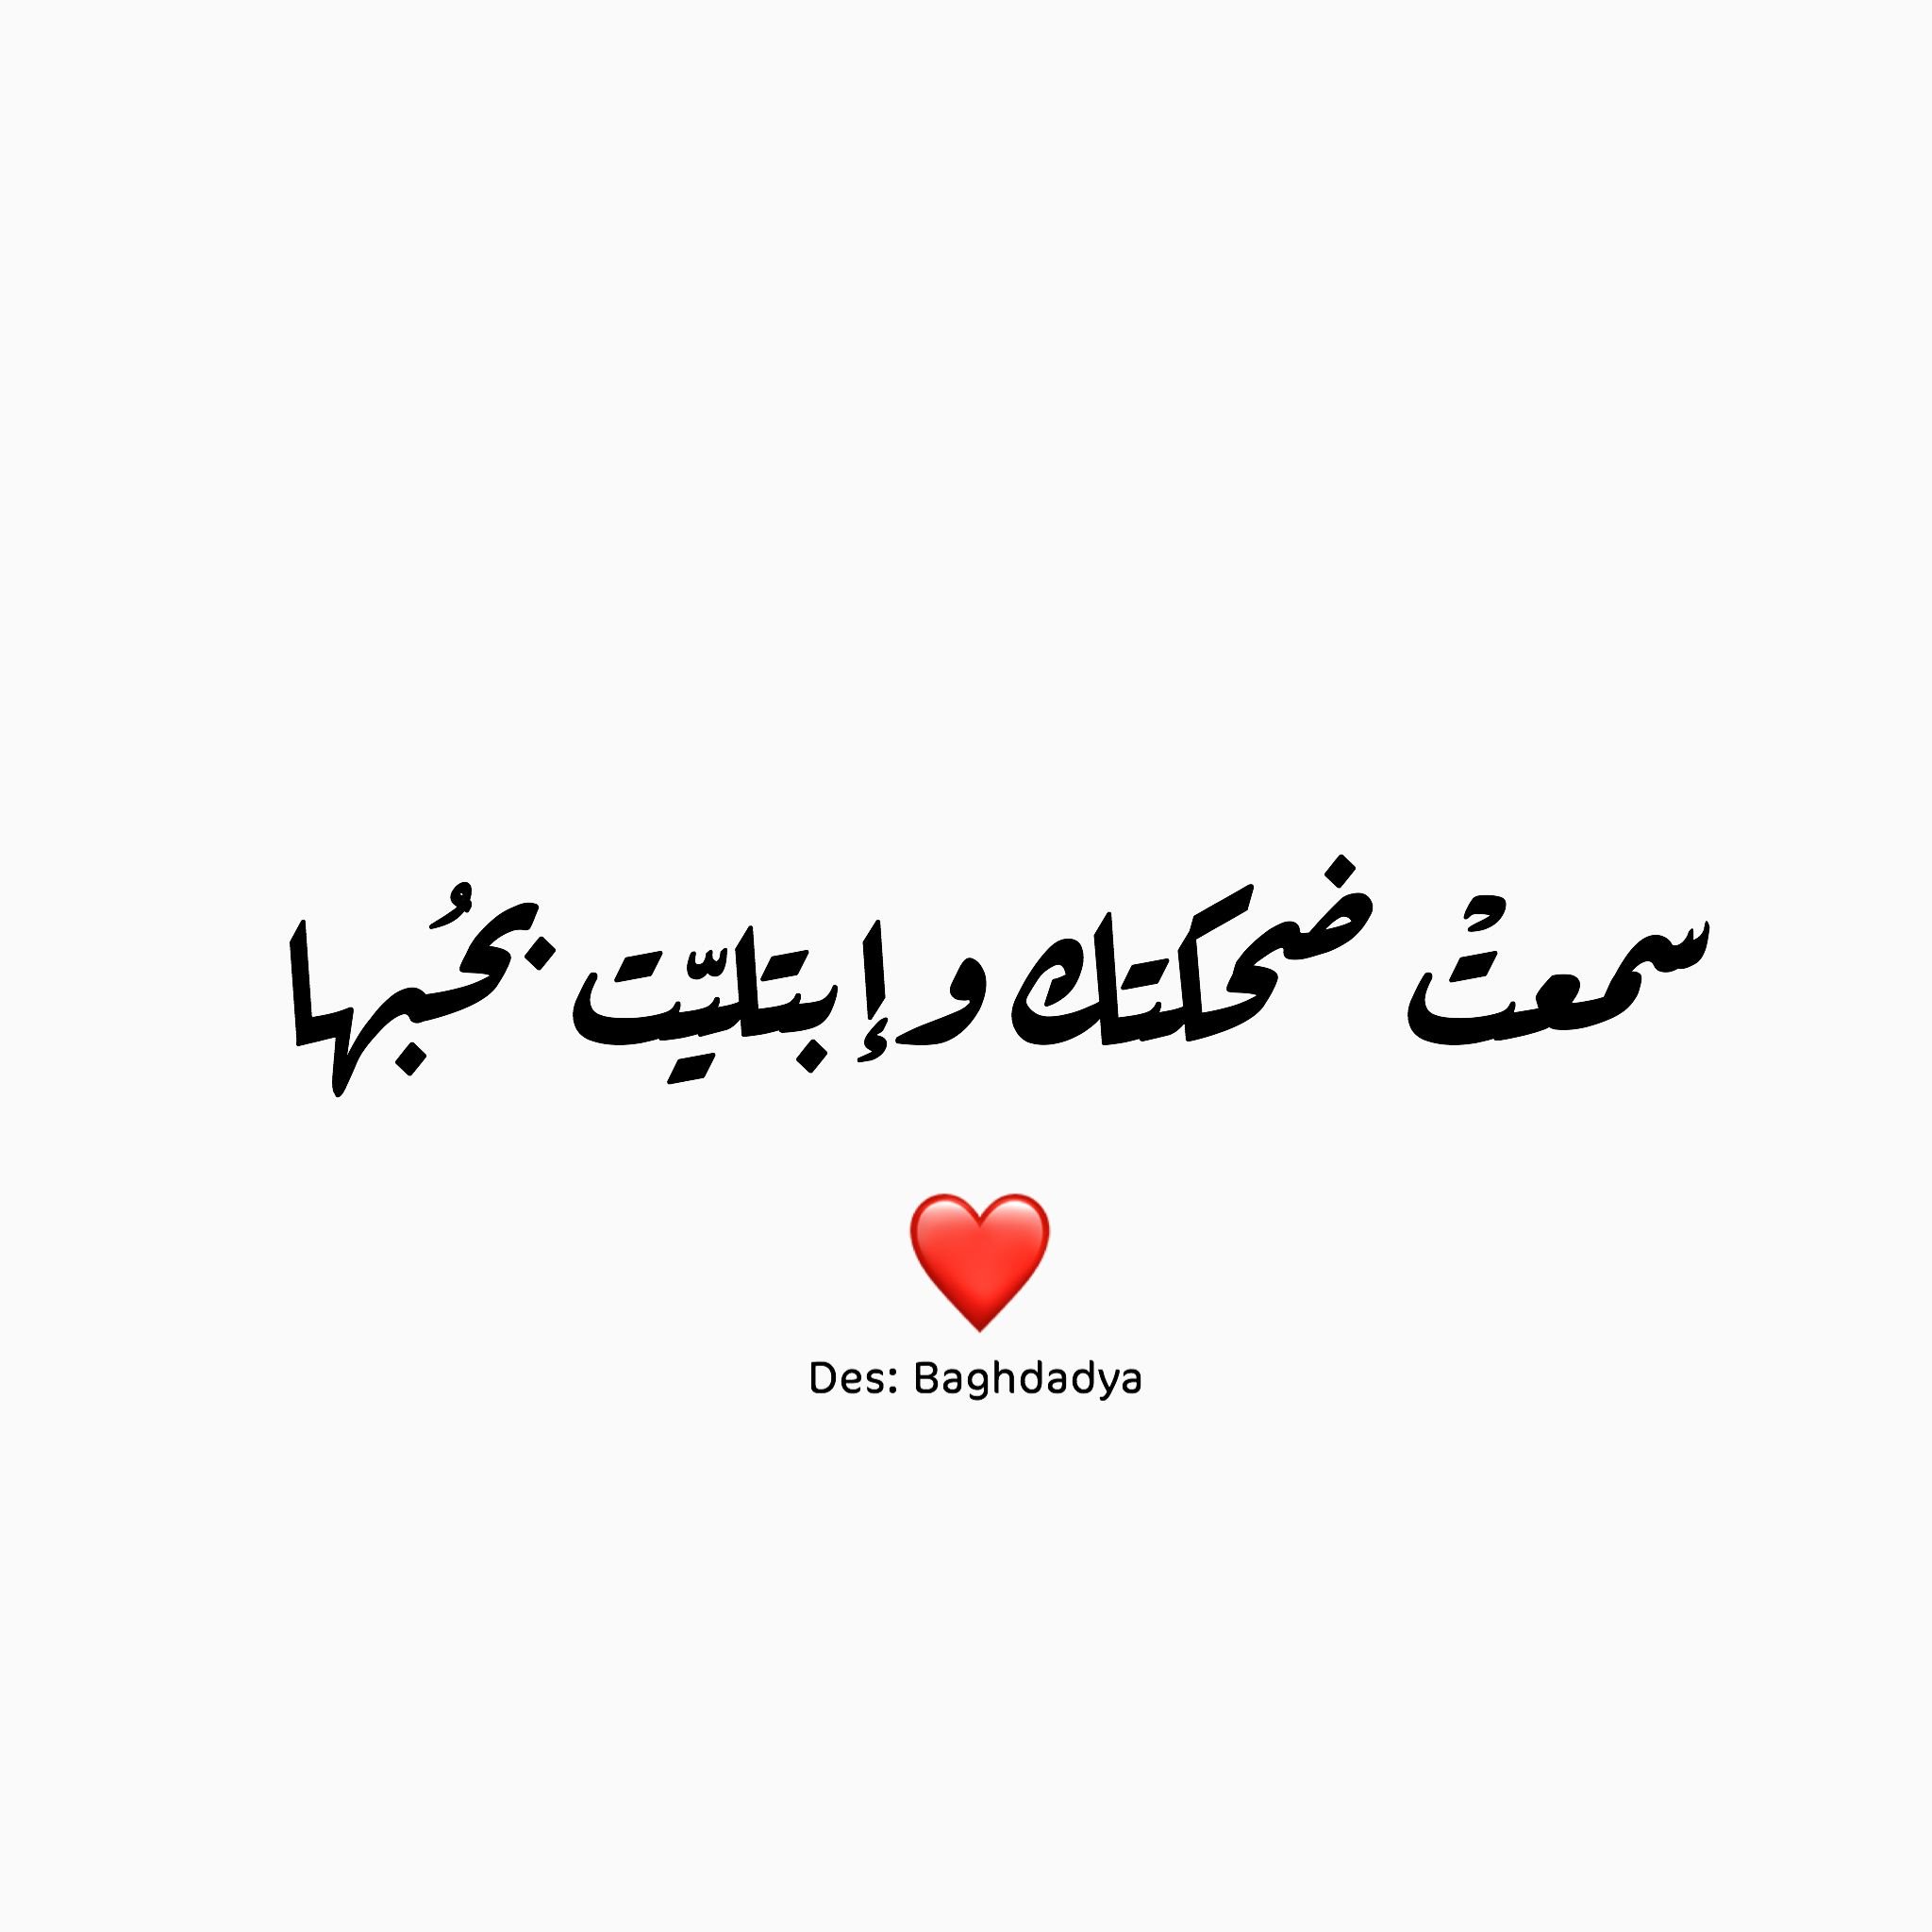 Как будет на арабском мама. Любовь на арабском. Люблю на арабском. Люьовб на арабсо. Слово любовь на арабском.